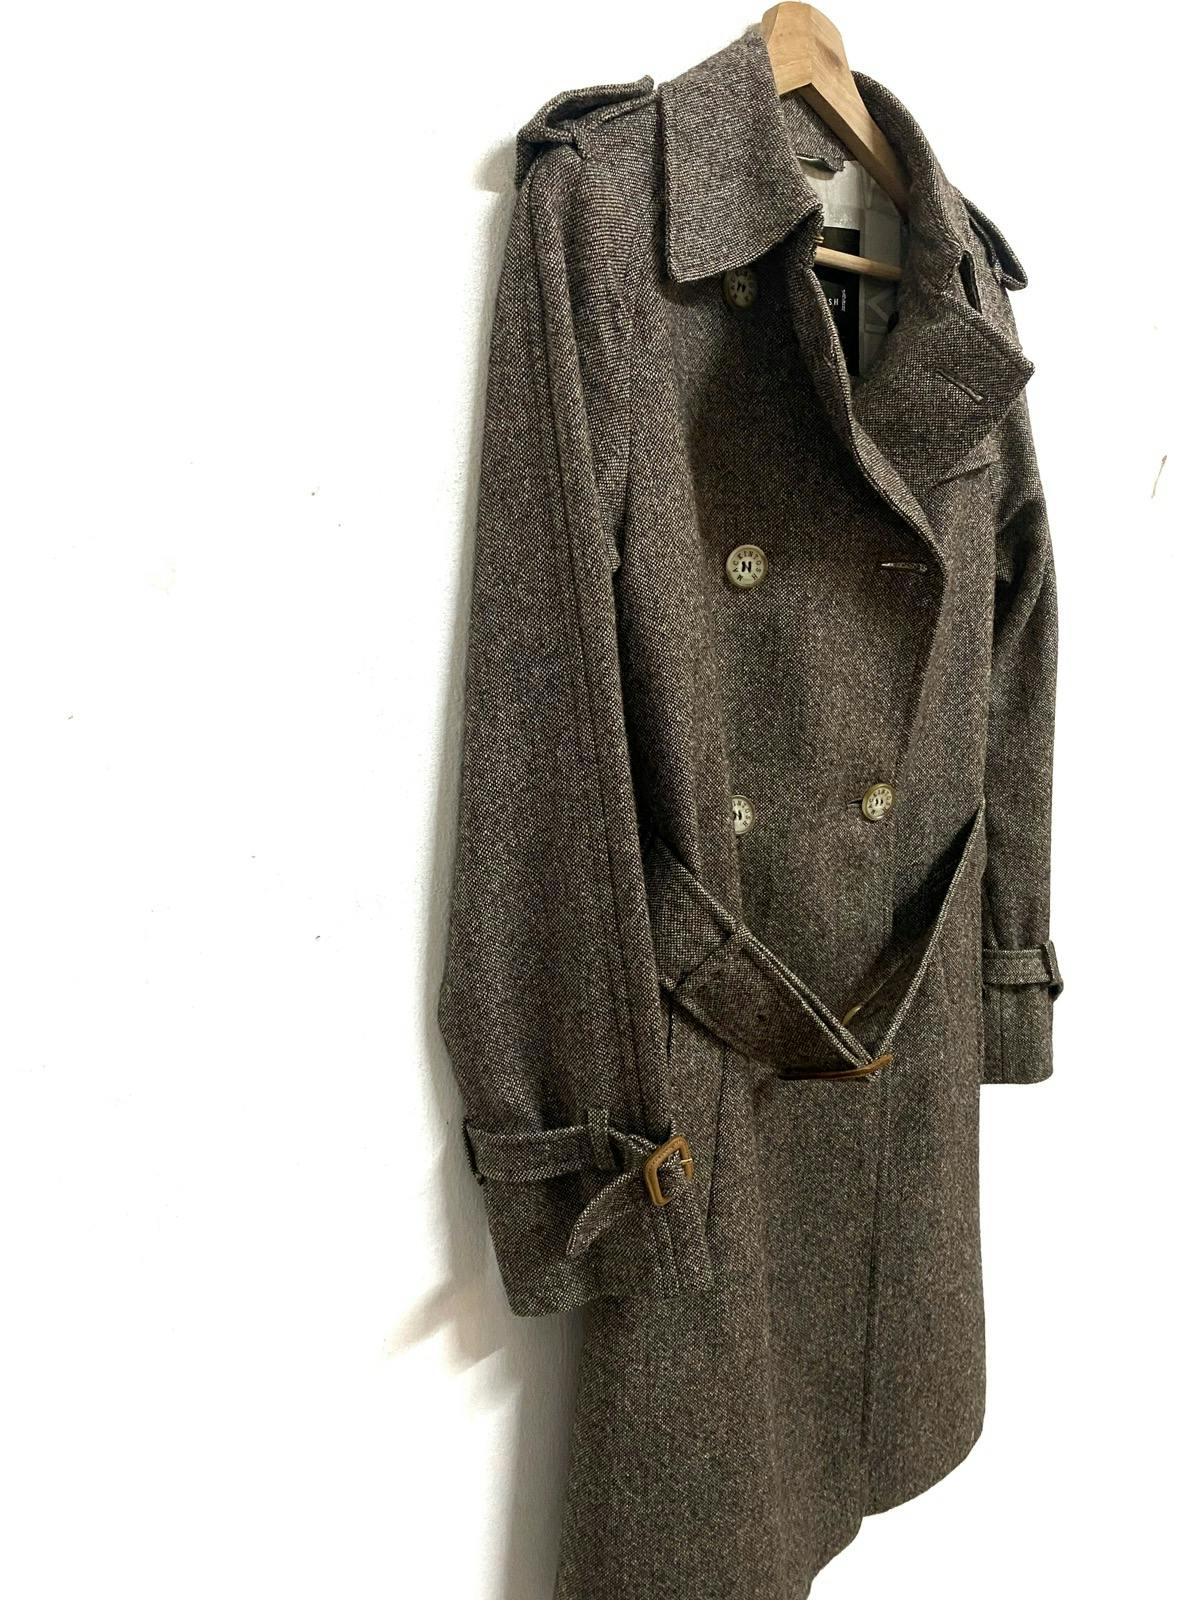 Mackintosh Herringbone Wool Coat Made in Scotland - 8